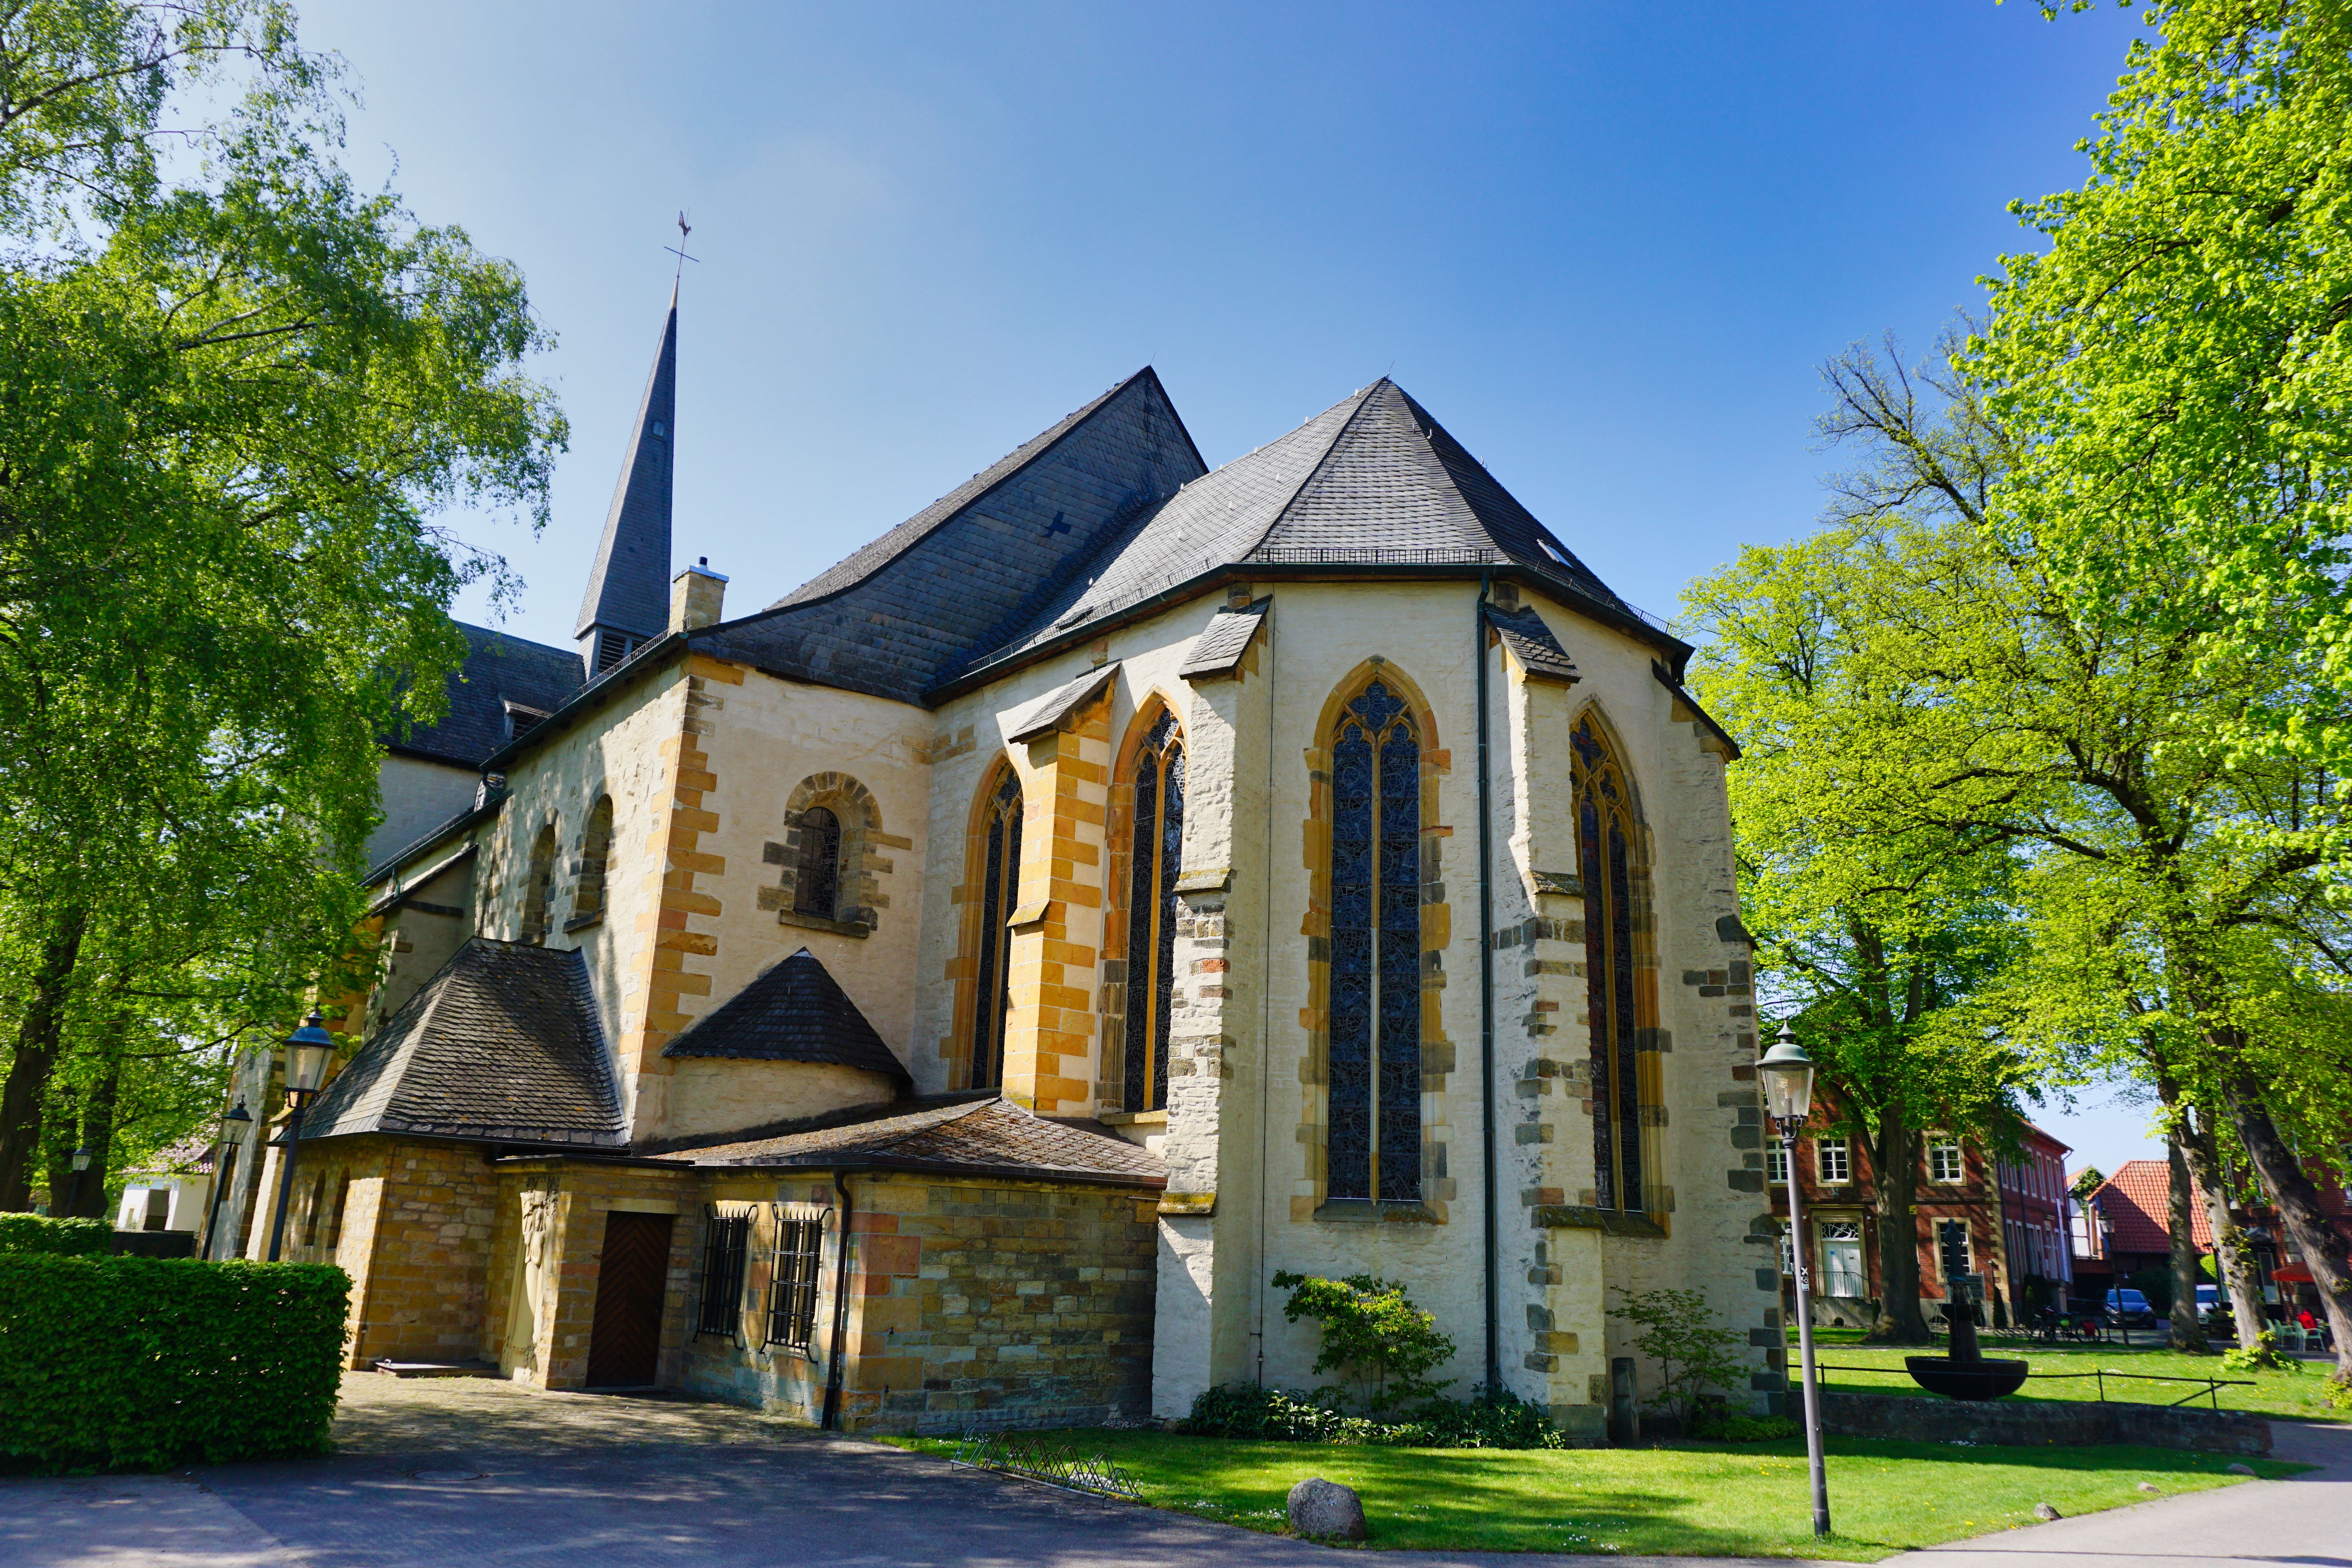 Pfarrkirche St. Laurentius in Clarholz, Herzebrock-Clarholz.
